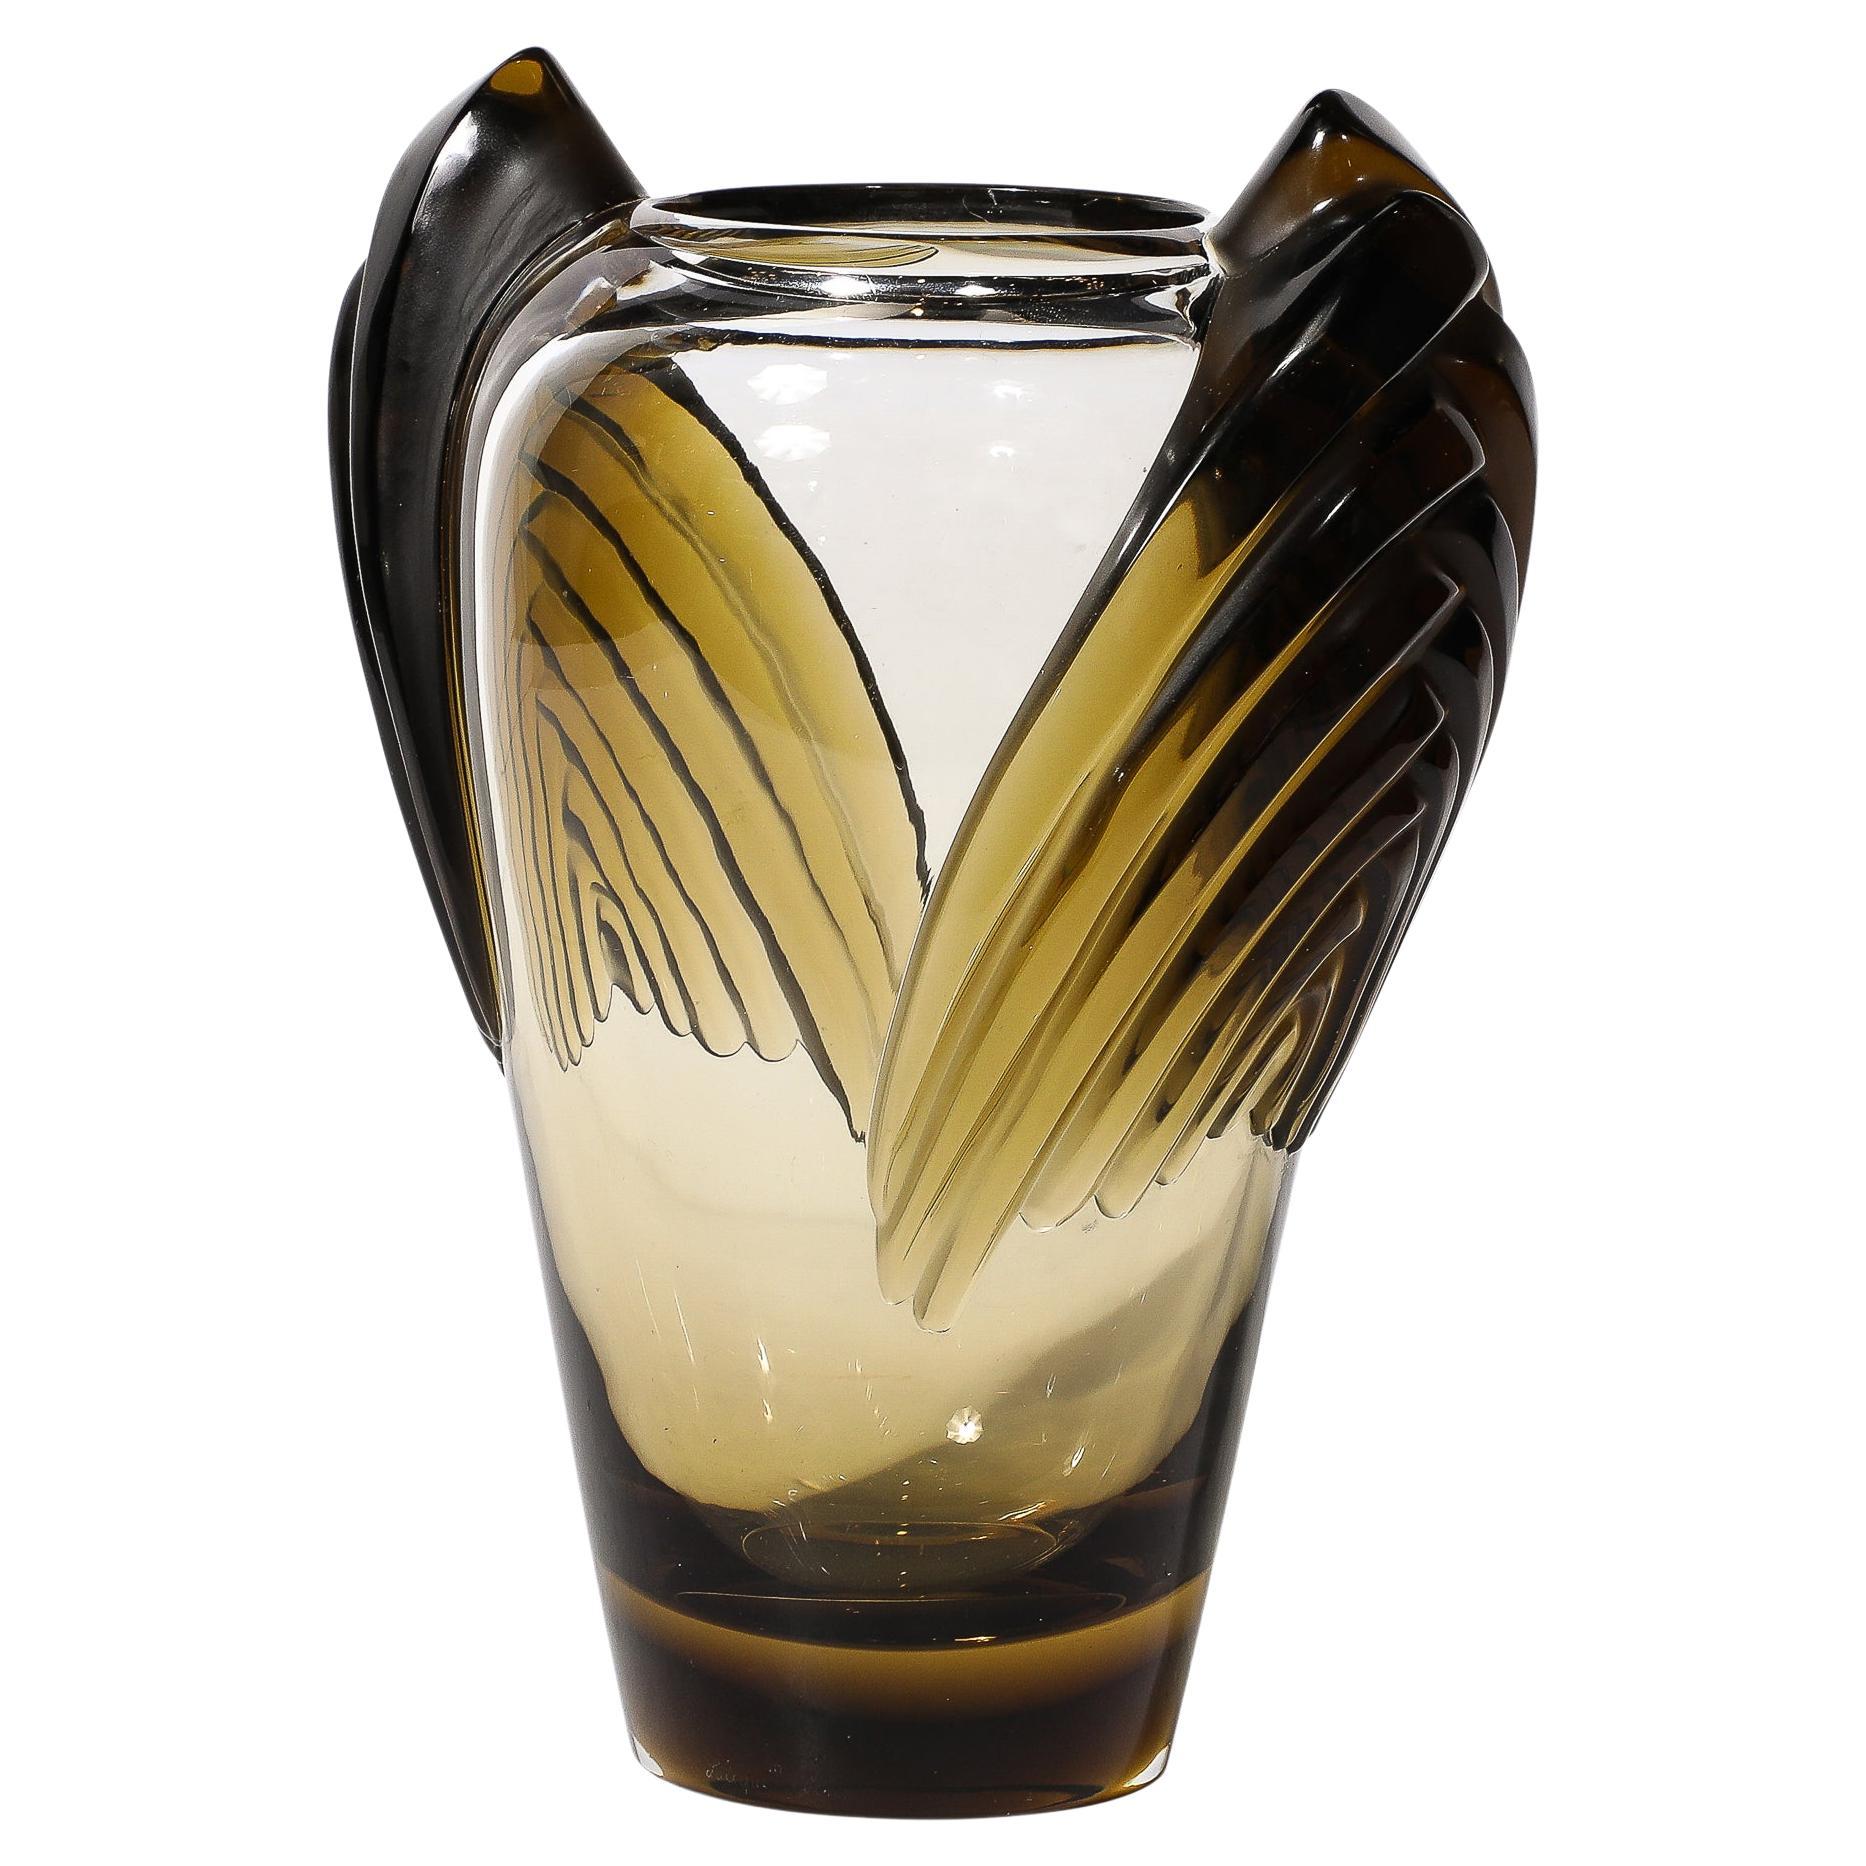 Art Deco Style Marrakech Vase signed Lalique